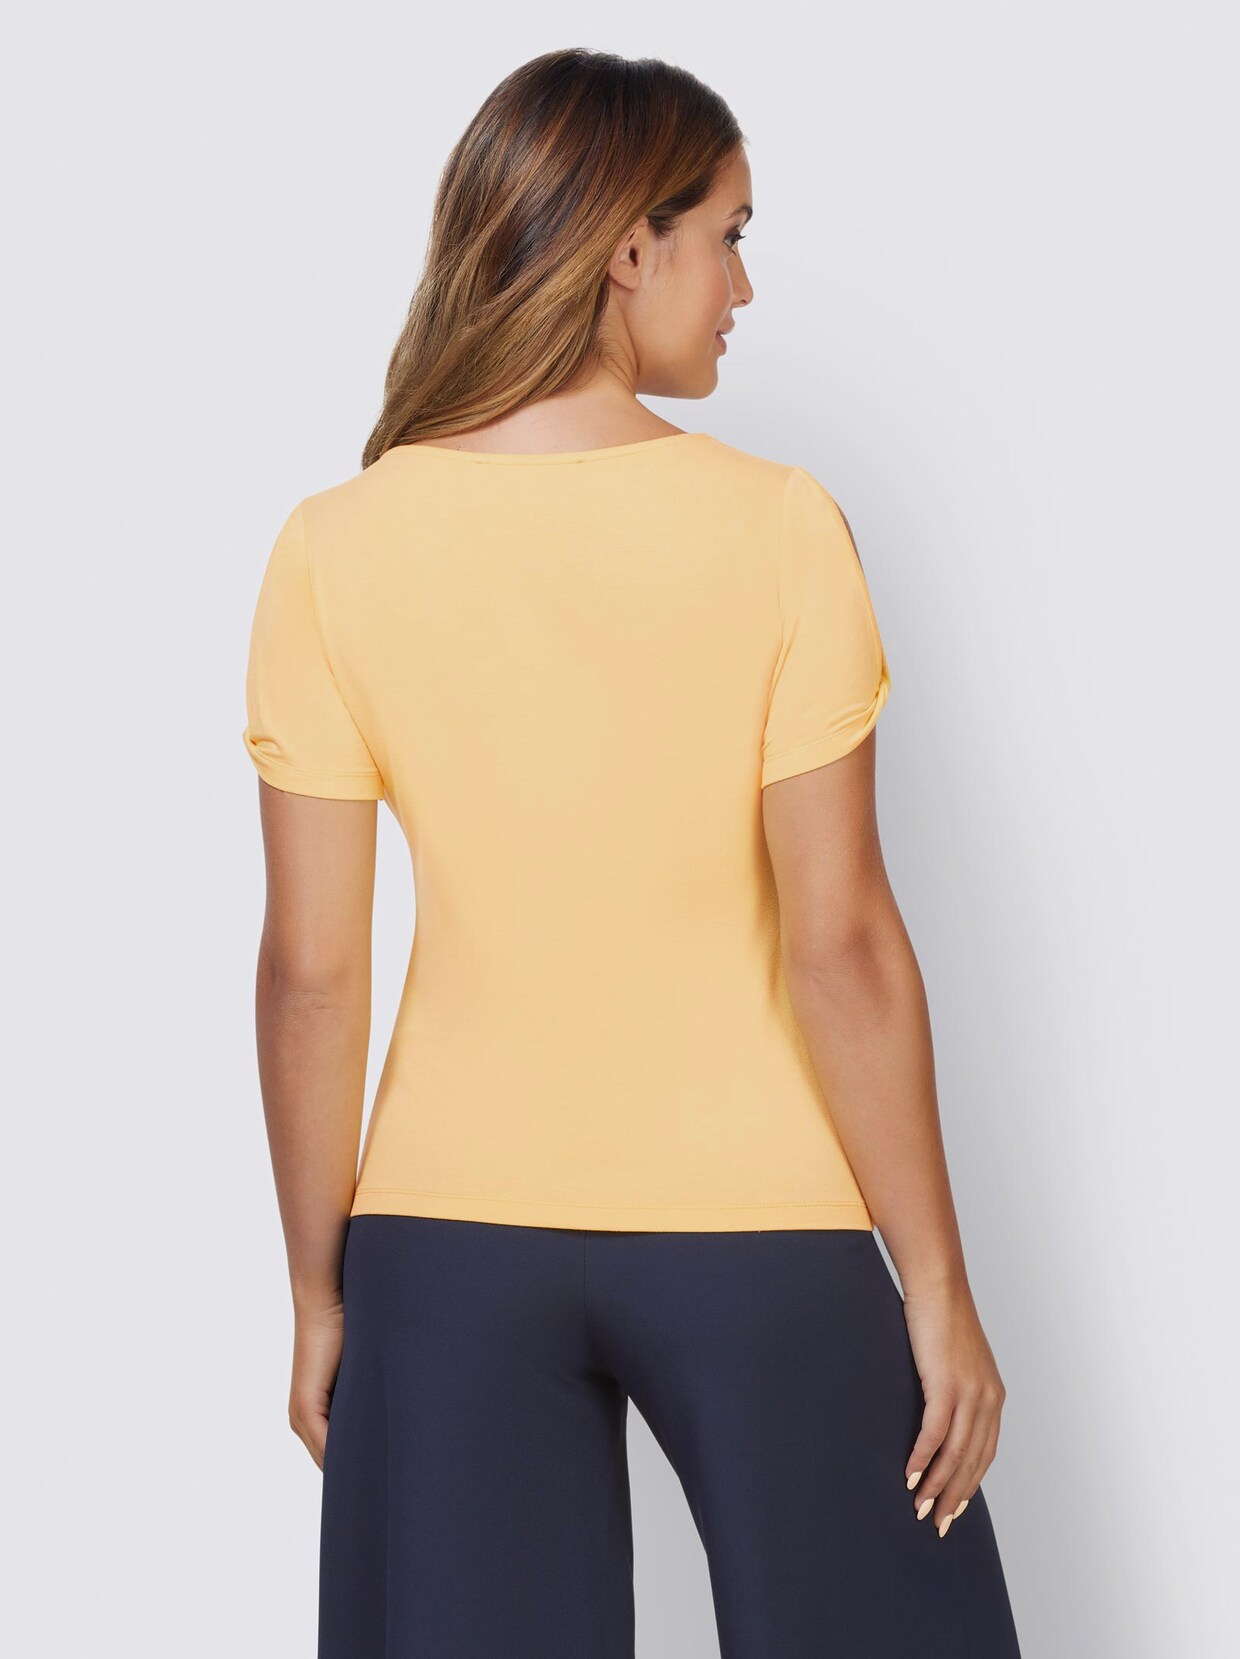 Ashley Brooke Shirt - gelb